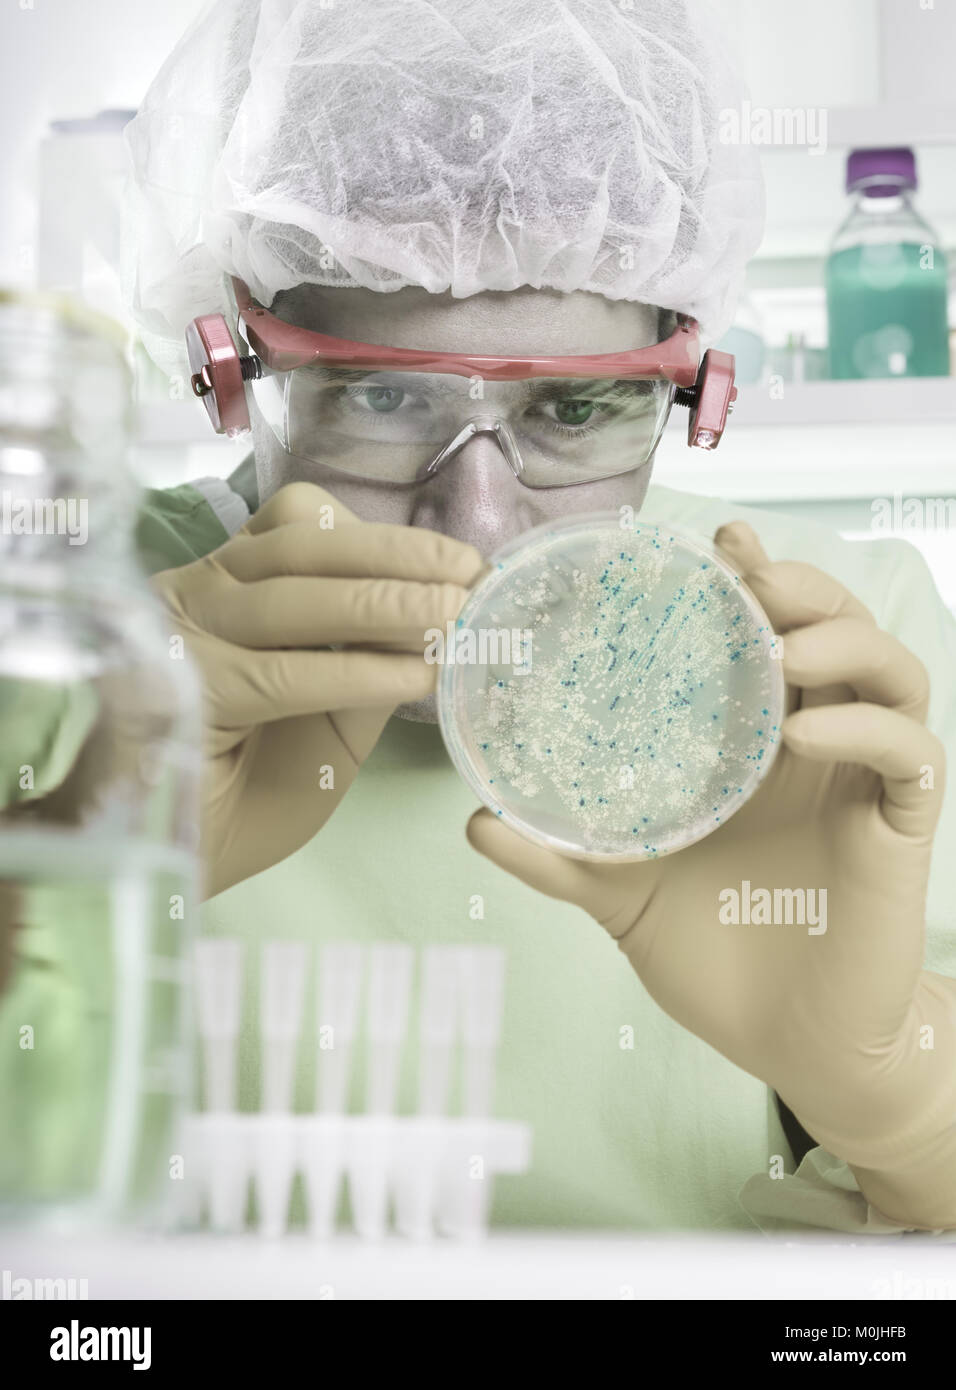 Mikrobiologe in Schutz nimmt Bakterienkolonien Stockfoto